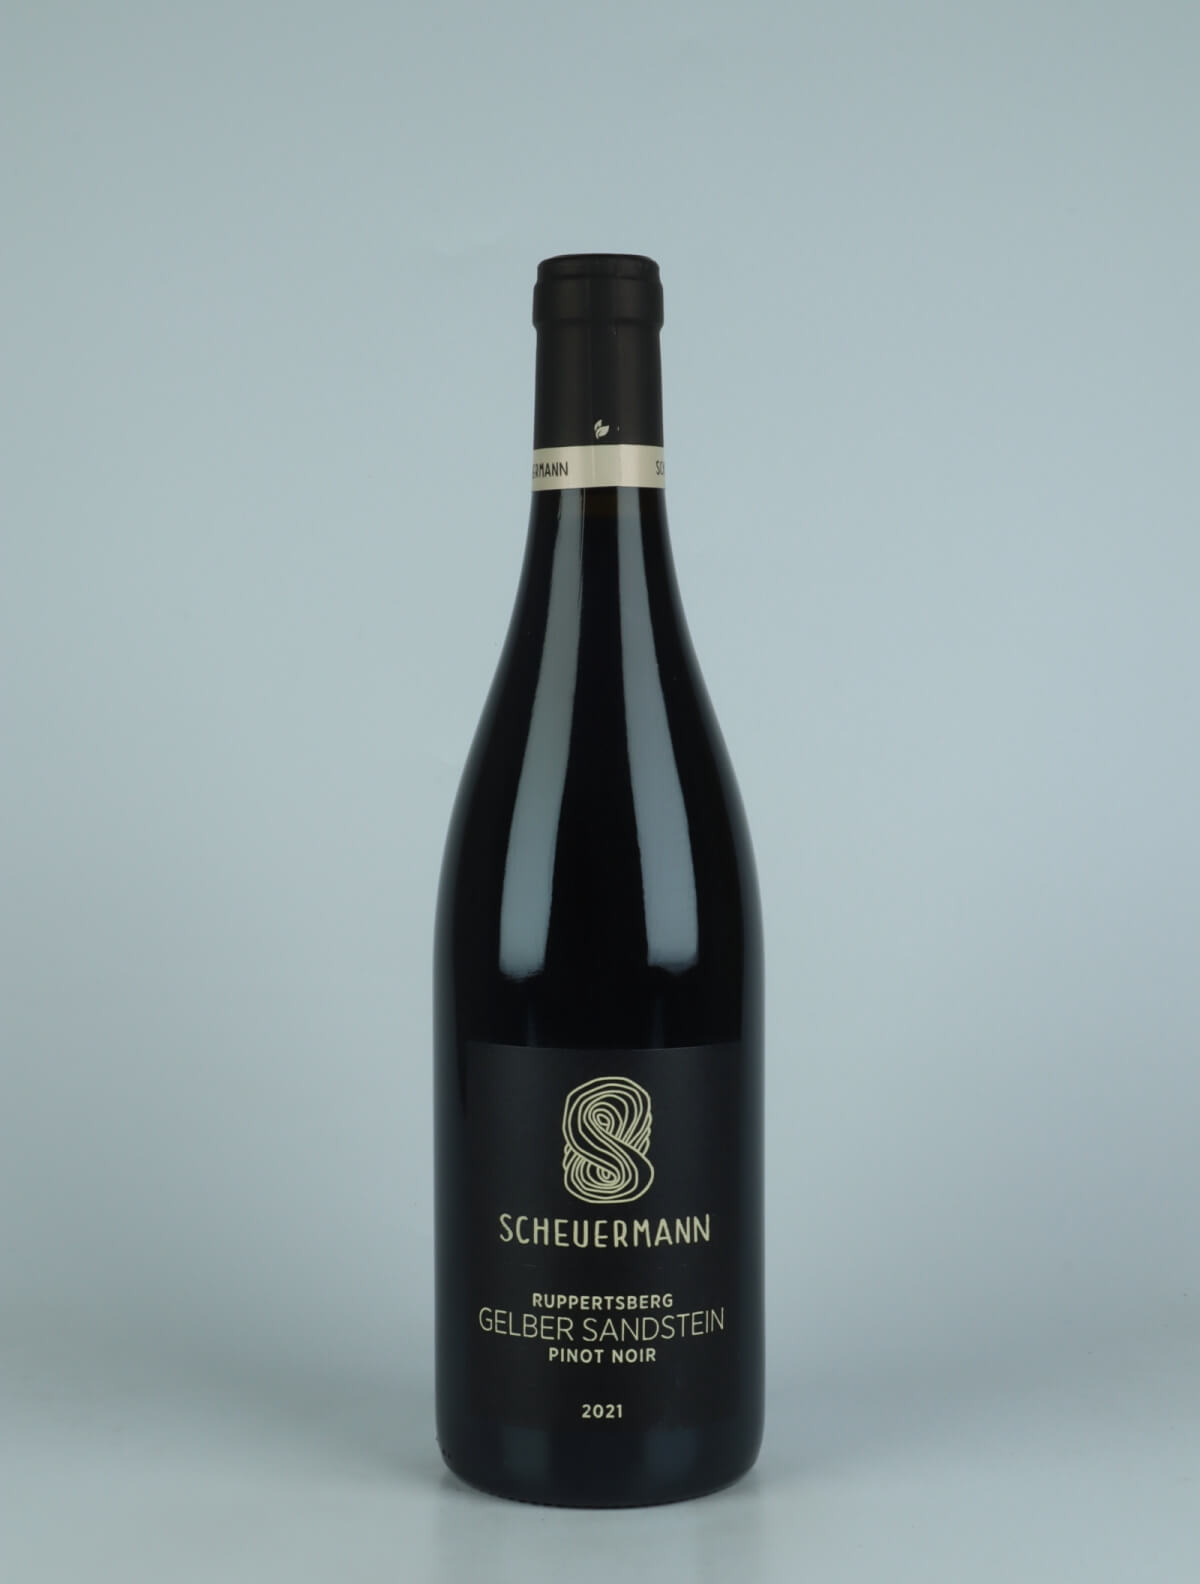 A bottle 2021 Pinot Noir - Gelber Sandstein Red wine from Weingut Scheuermann, Pfalz in Germany